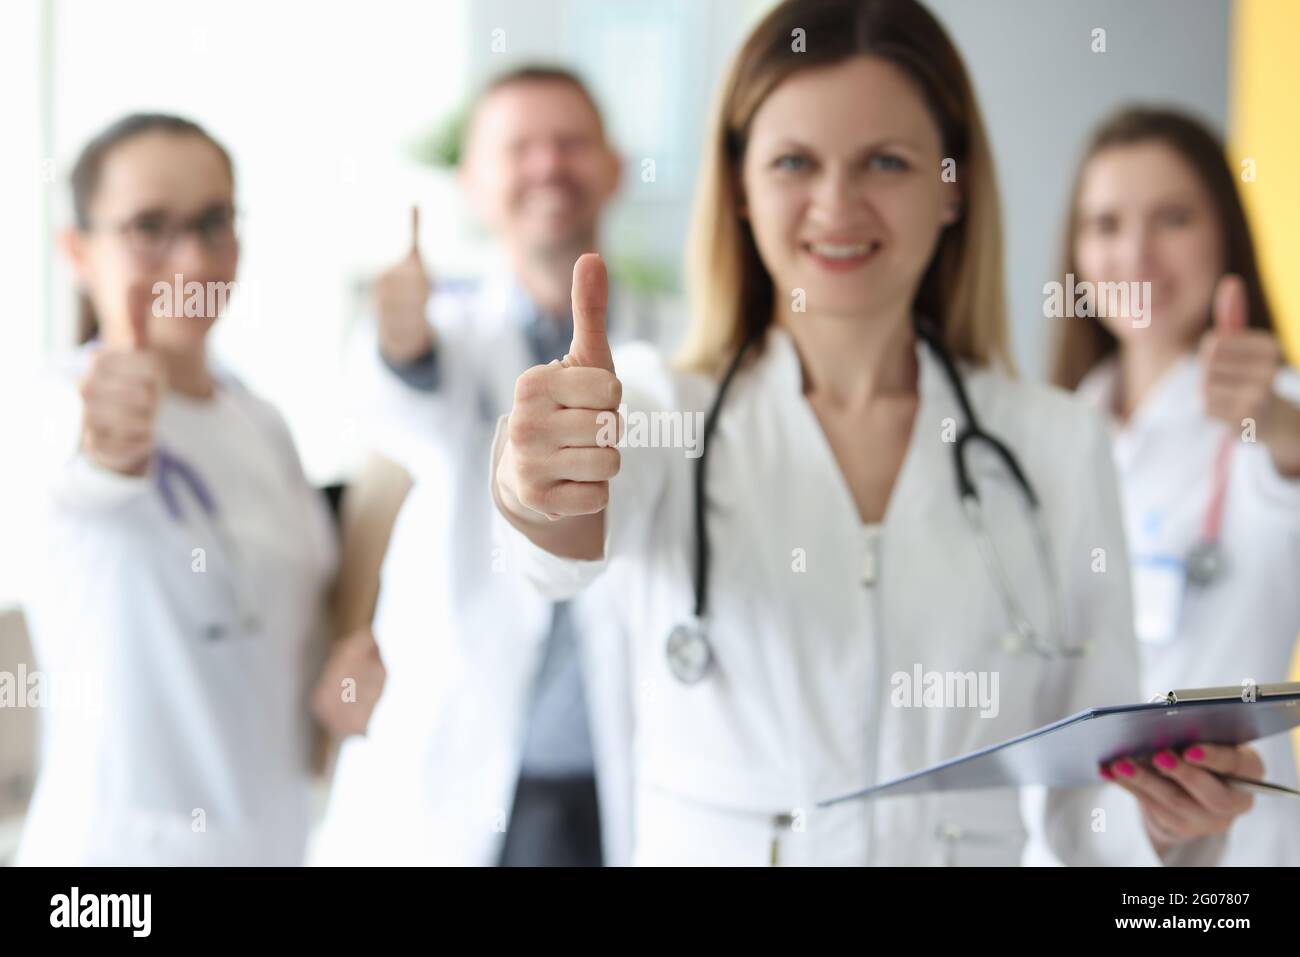 Маркетинг врача. Kuprevich доктор. Маркетинг для врачей фото. Врач протягивает руку.